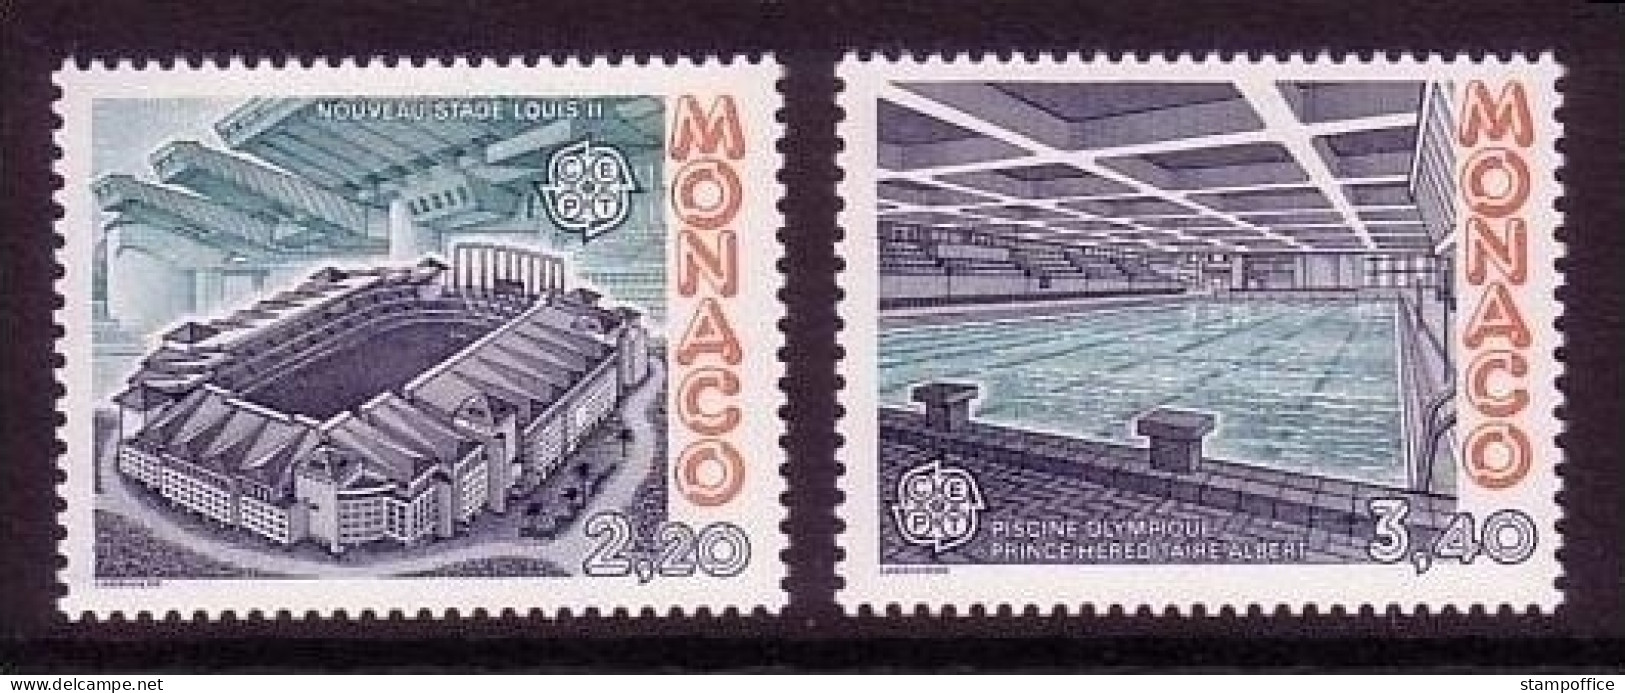 MONACO MI-NR. 1794-1795 POSTFRISCH(MINT) EUROPA 1987 - MODERNE ARCHITEKTUR - 1987